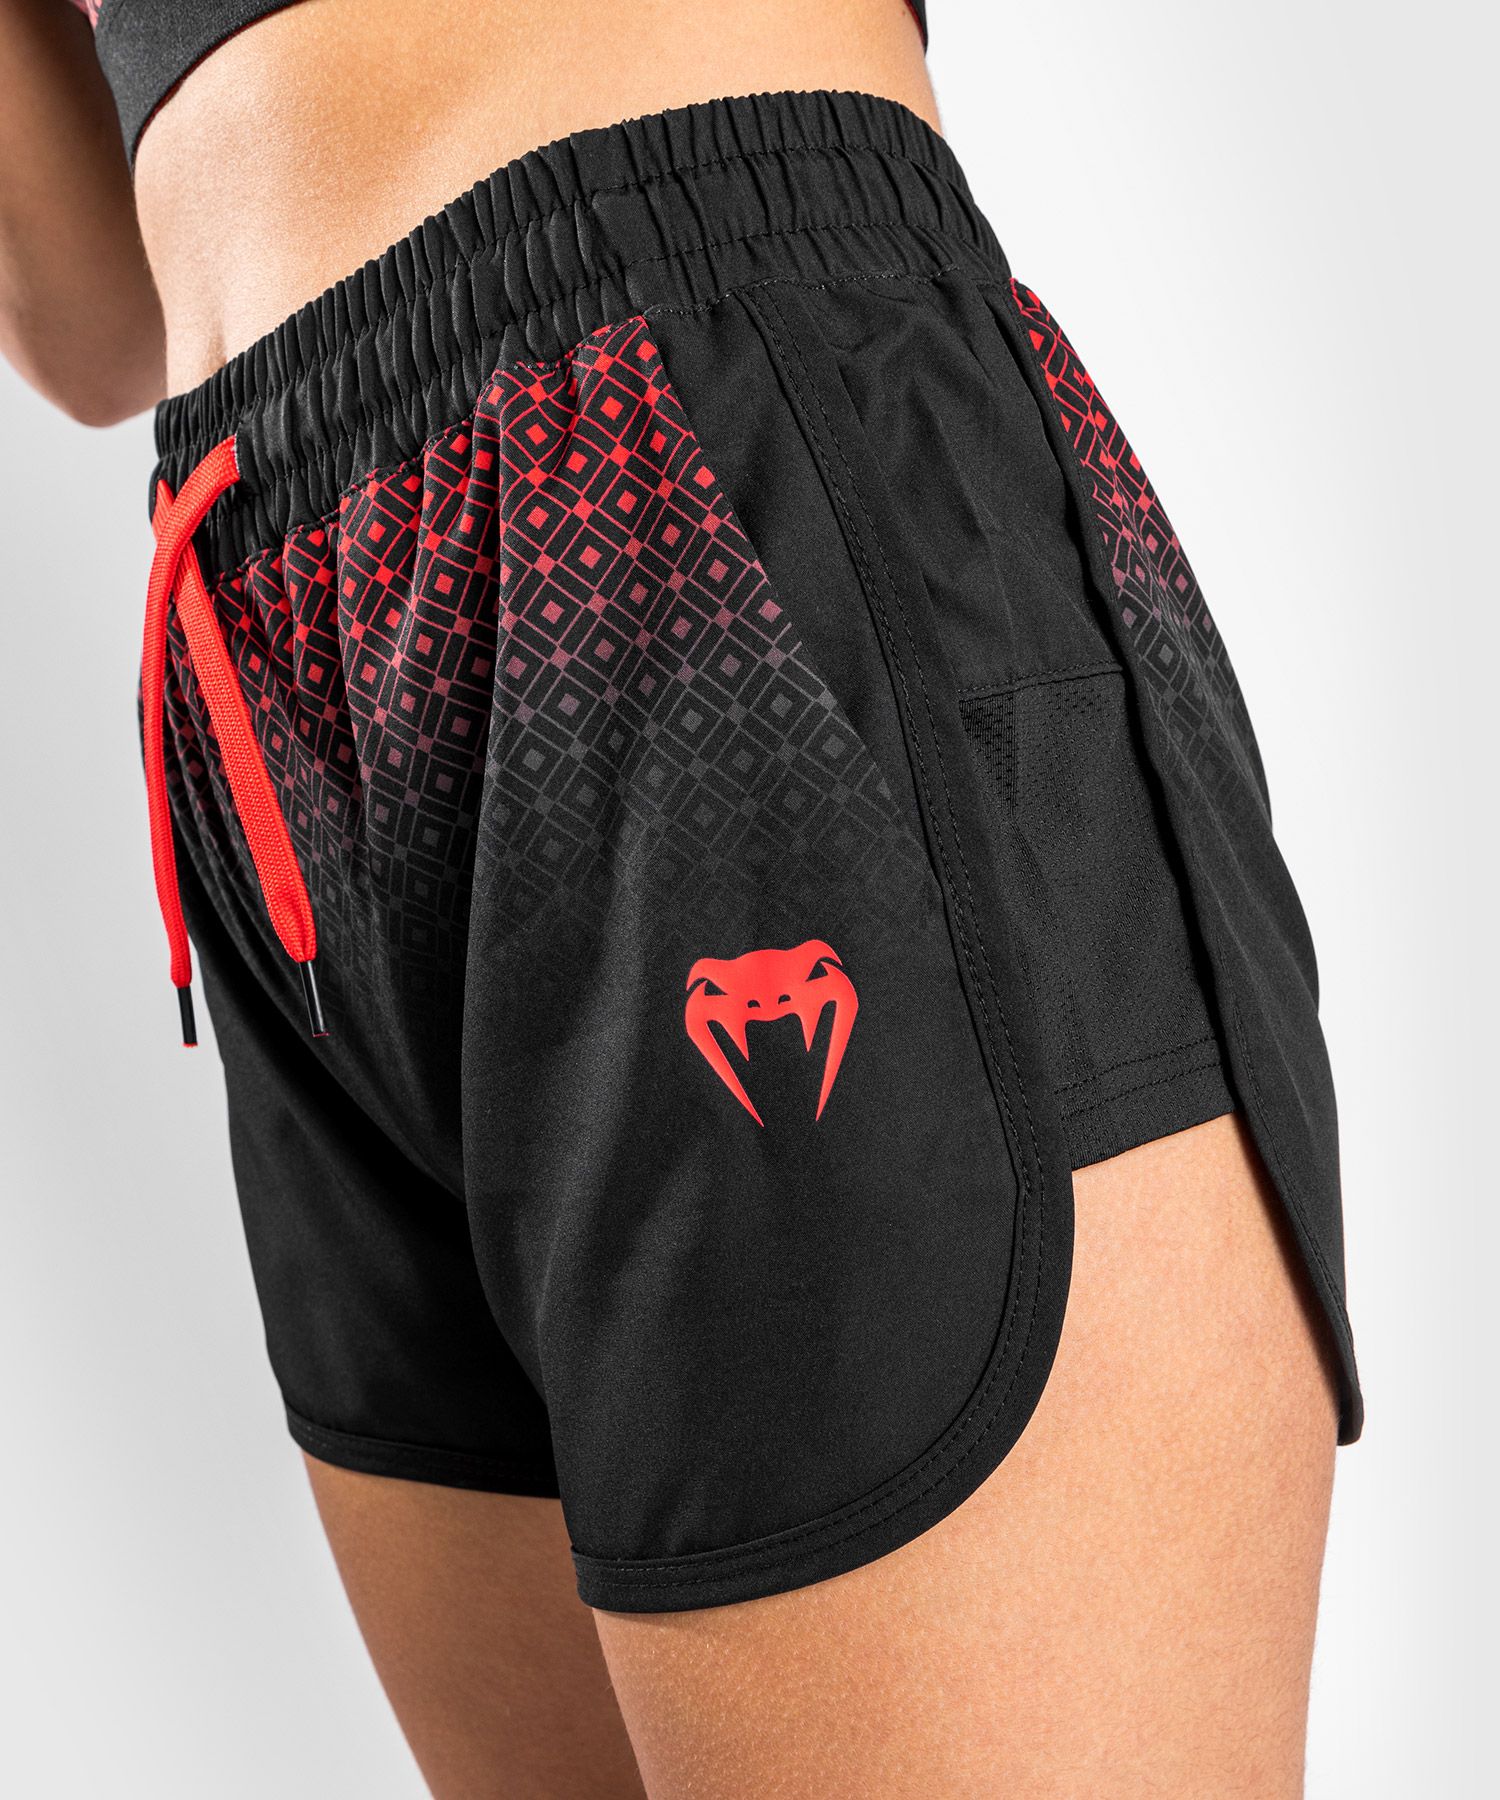 Pantaloncini da allenamento Venum UFC Performance Institute - Per Donna - Nero/Rosso